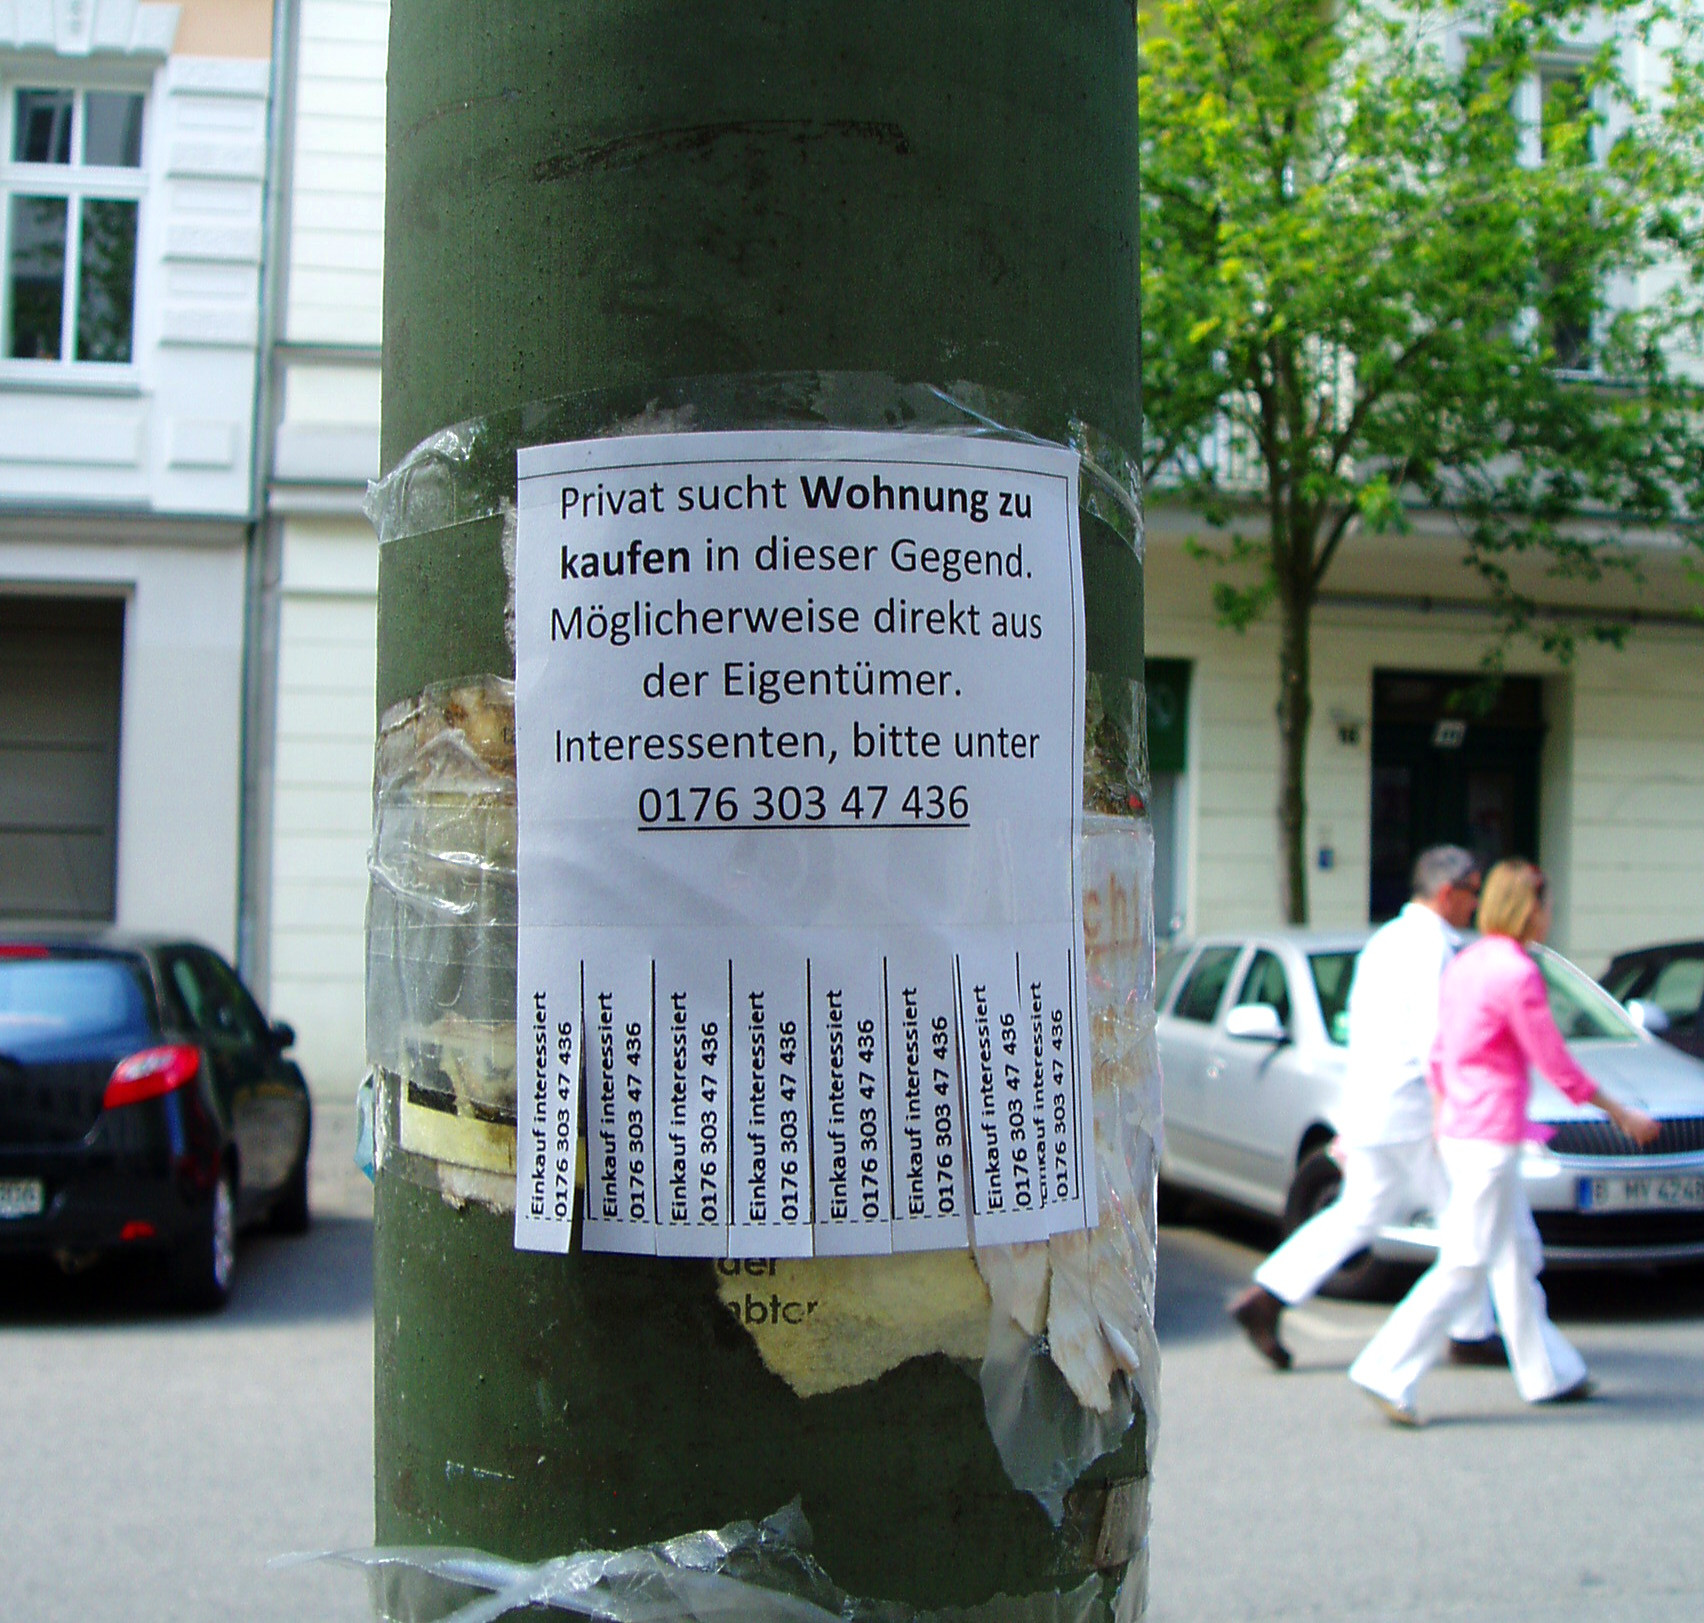 Wohnungs Suche
 Berlin Wohnungsgesuche als Gentrification Indikator